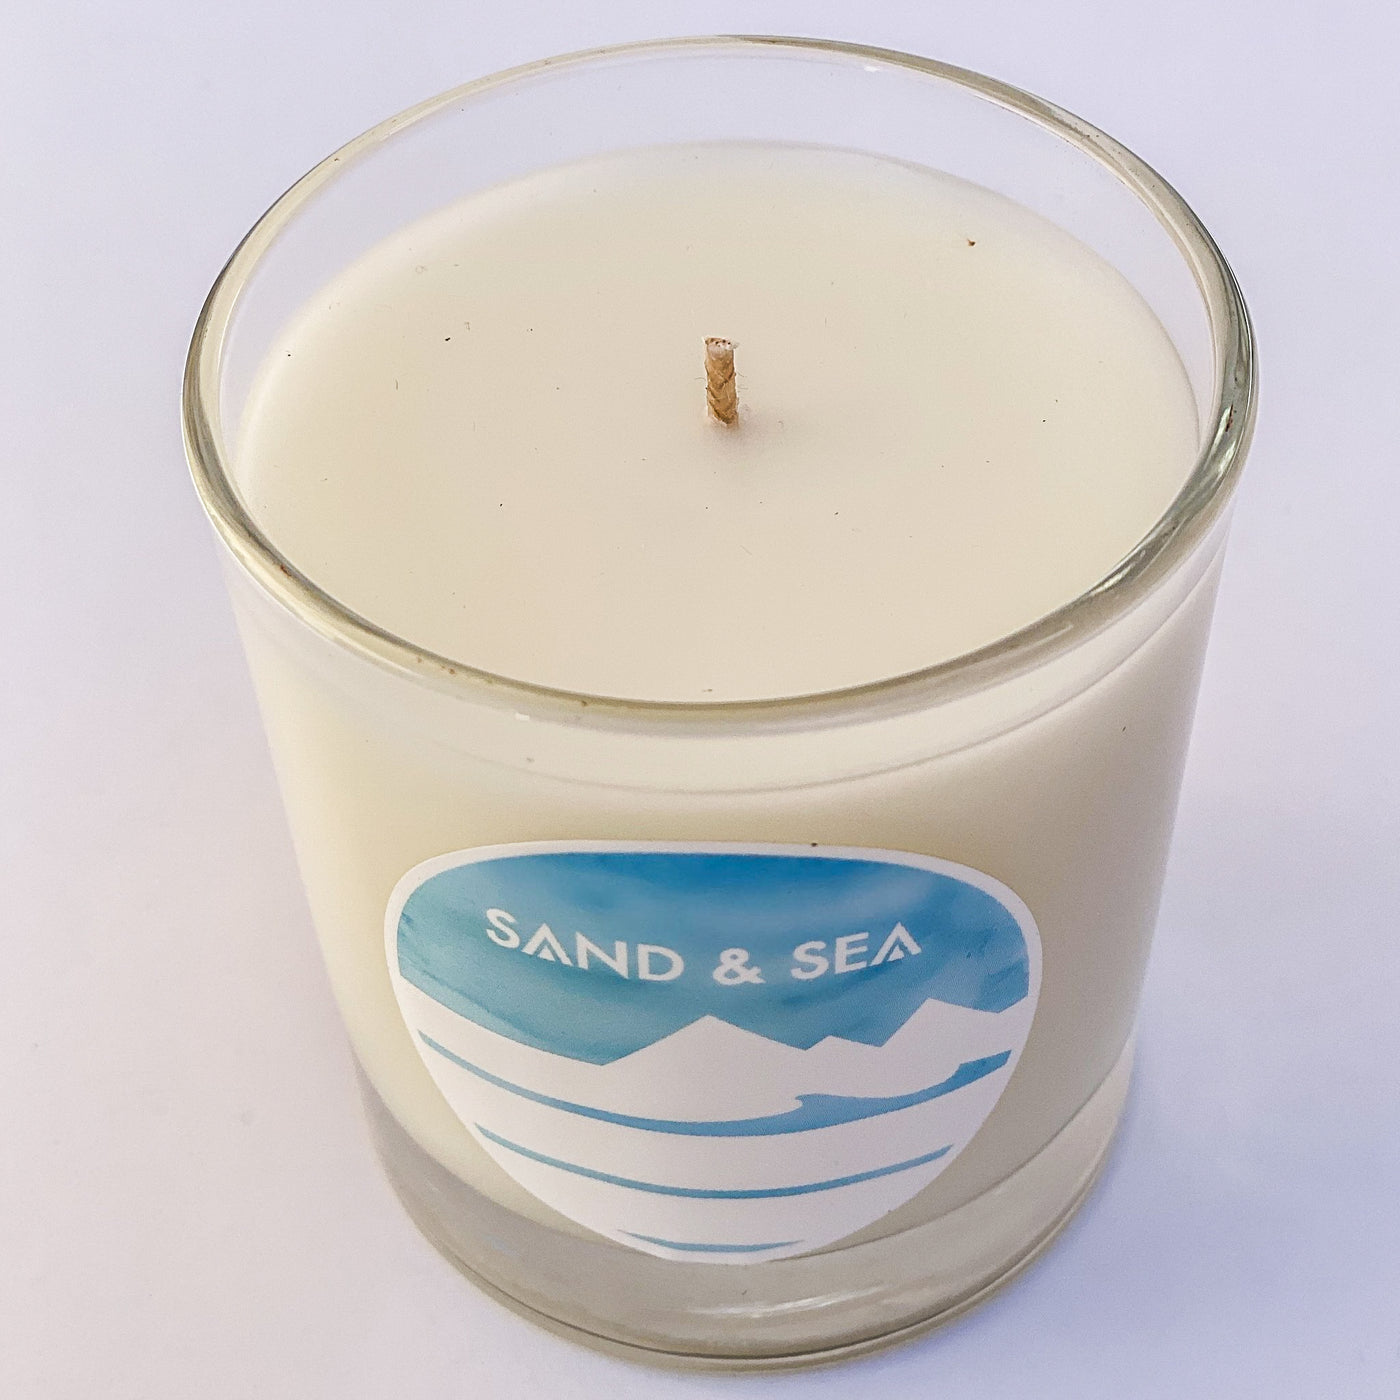 Sand & Sea Candle